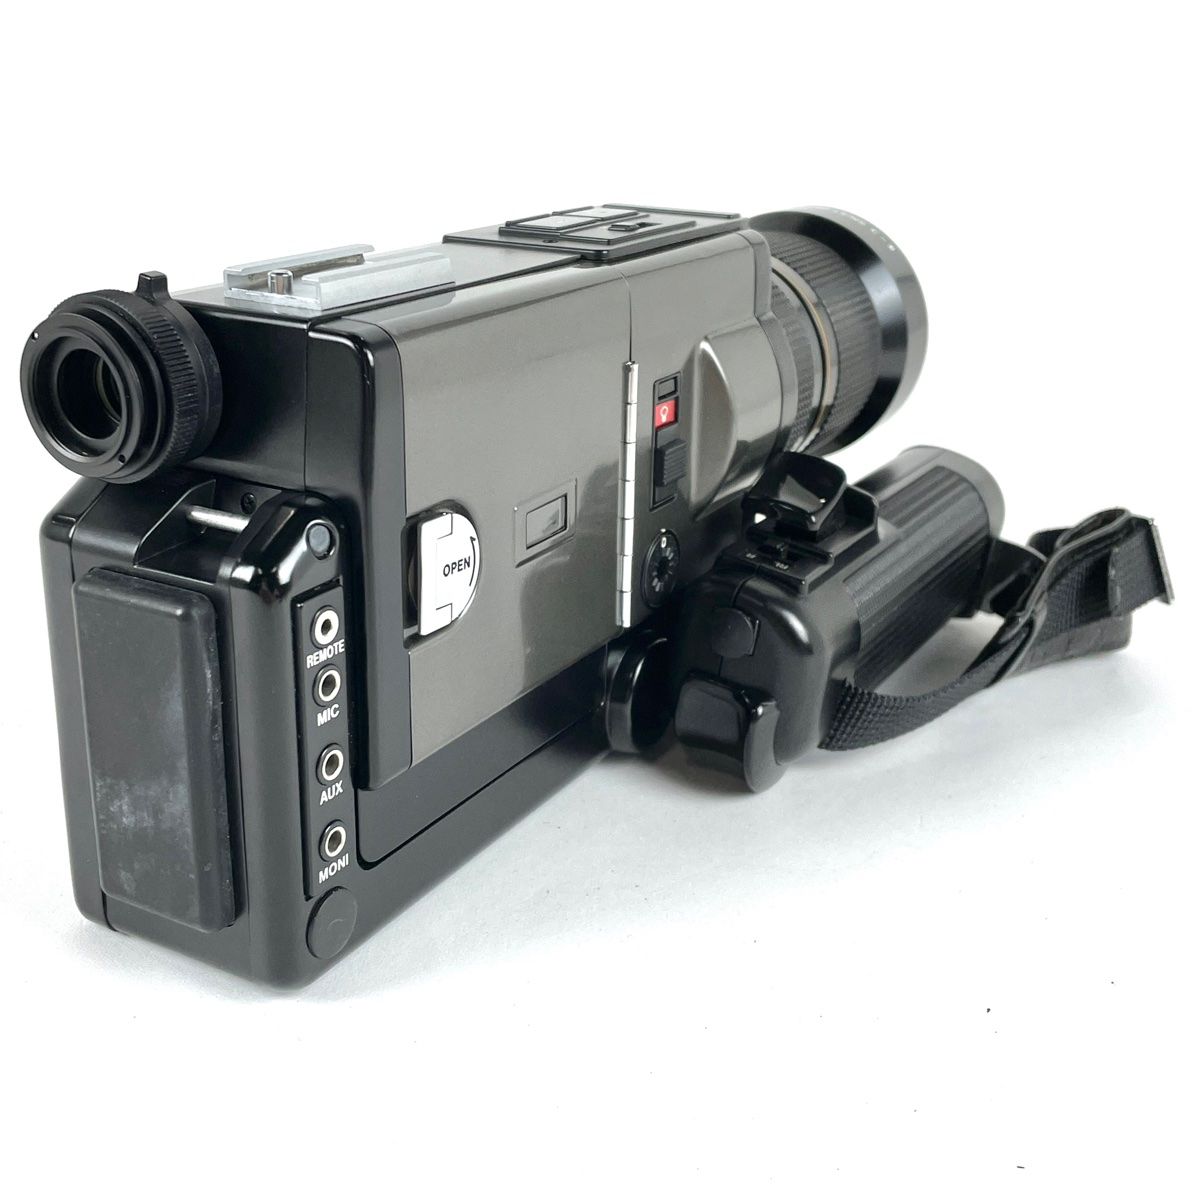 キヤノン1014XL-S 8ミリフィルムカメラ - フィルムカメラ